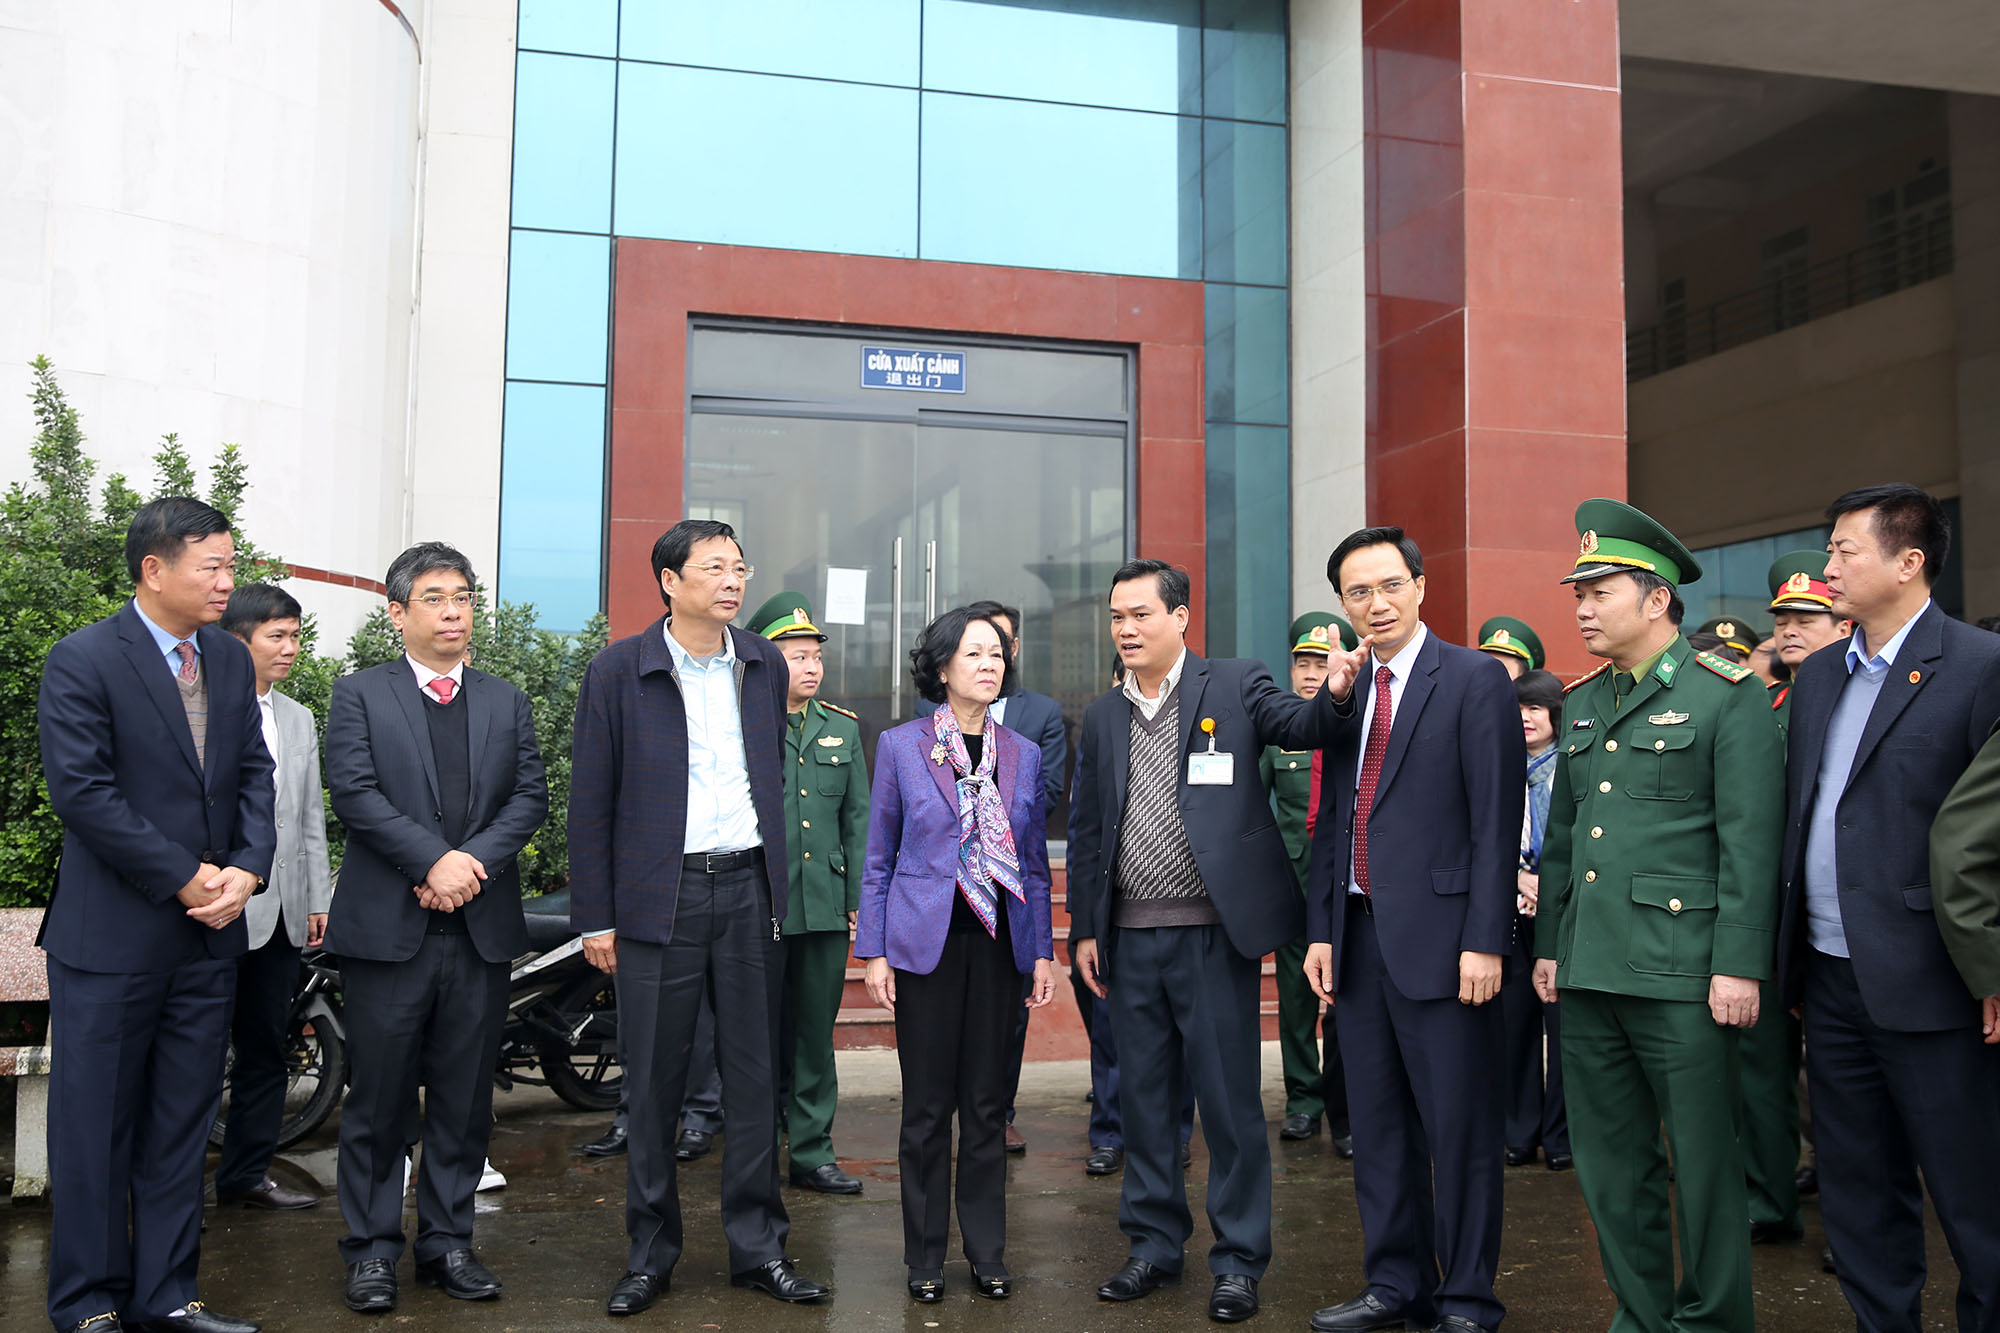 Đoàn công tác tới thăm các đơn vị, lực lượng chức năng đang làm nhiệm vụ tại cửa khẩu Bắc Phong Sinh.